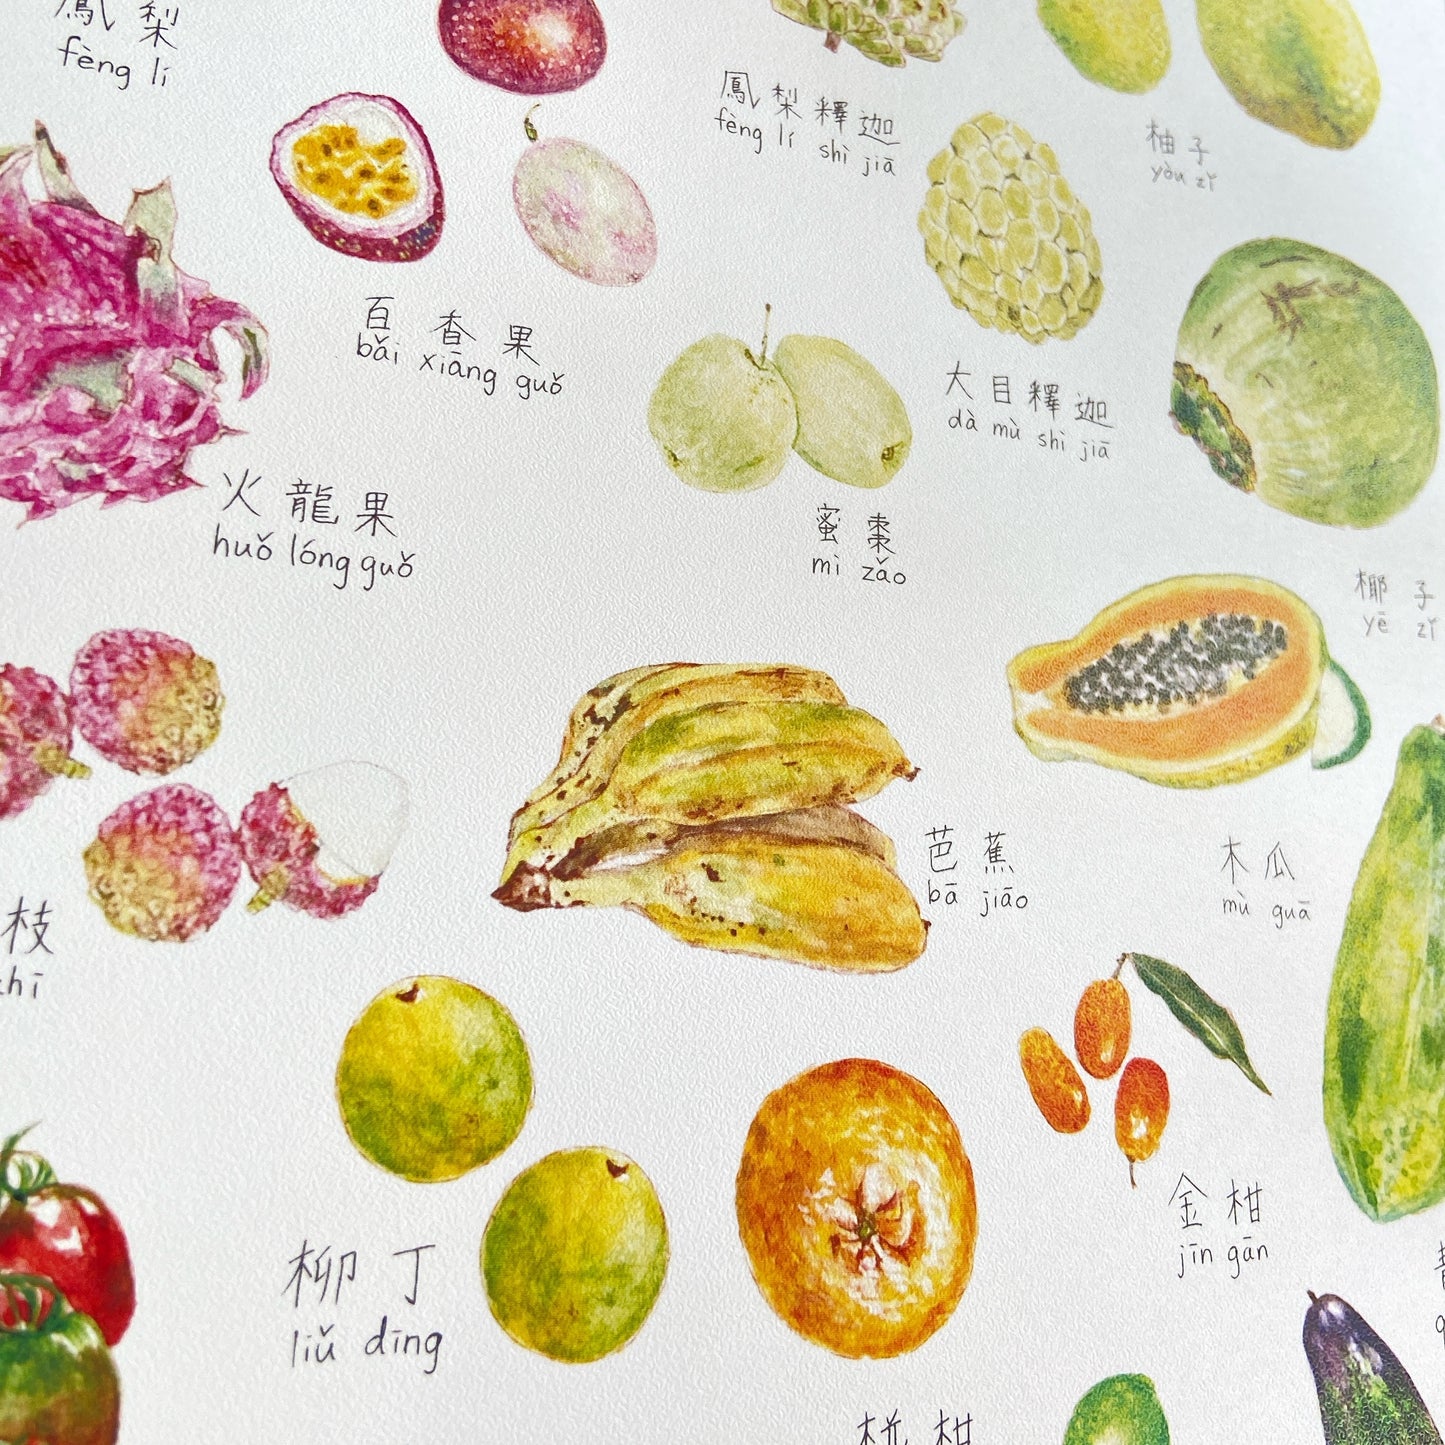 "台湾の果物と野菜” アートプリント（A3サイズ・額装なし）